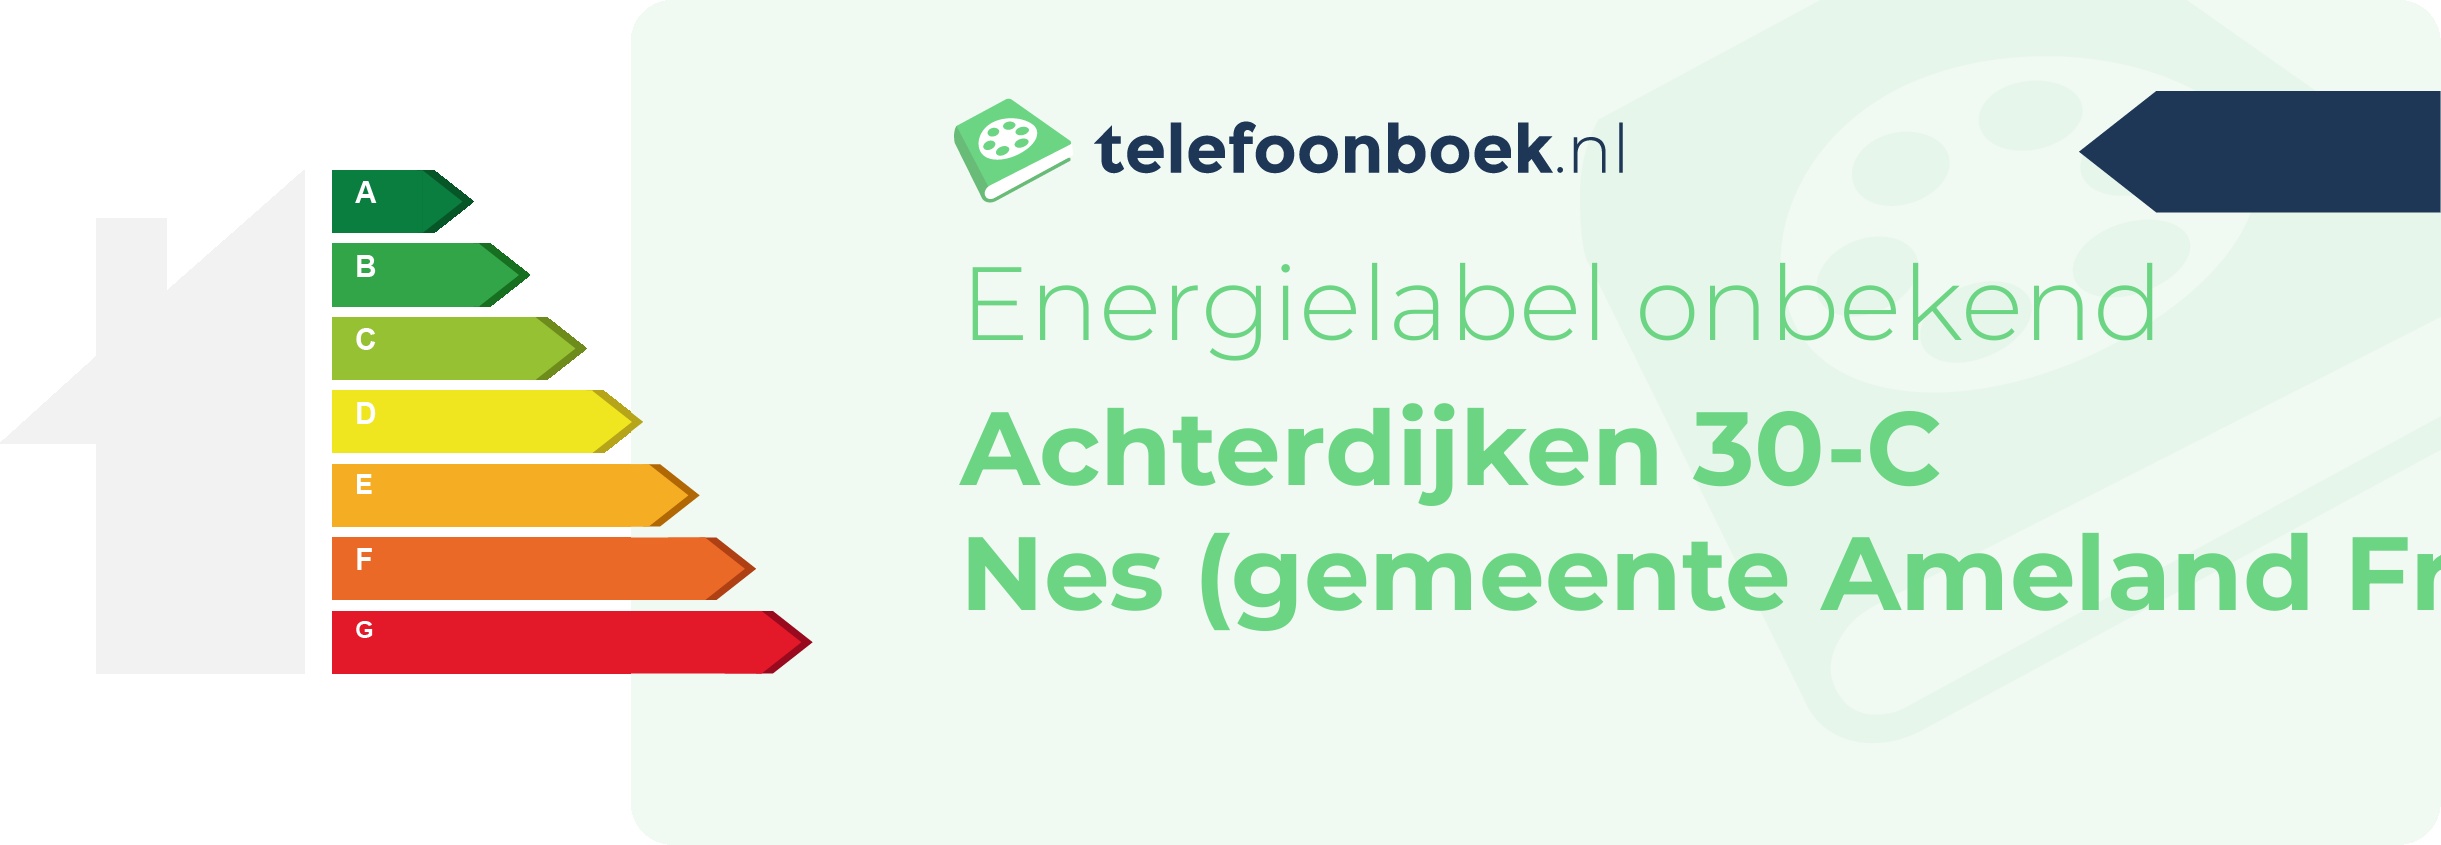 Energielabel Achterdijken 30-C Nes (gemeente Ameland Friesland)